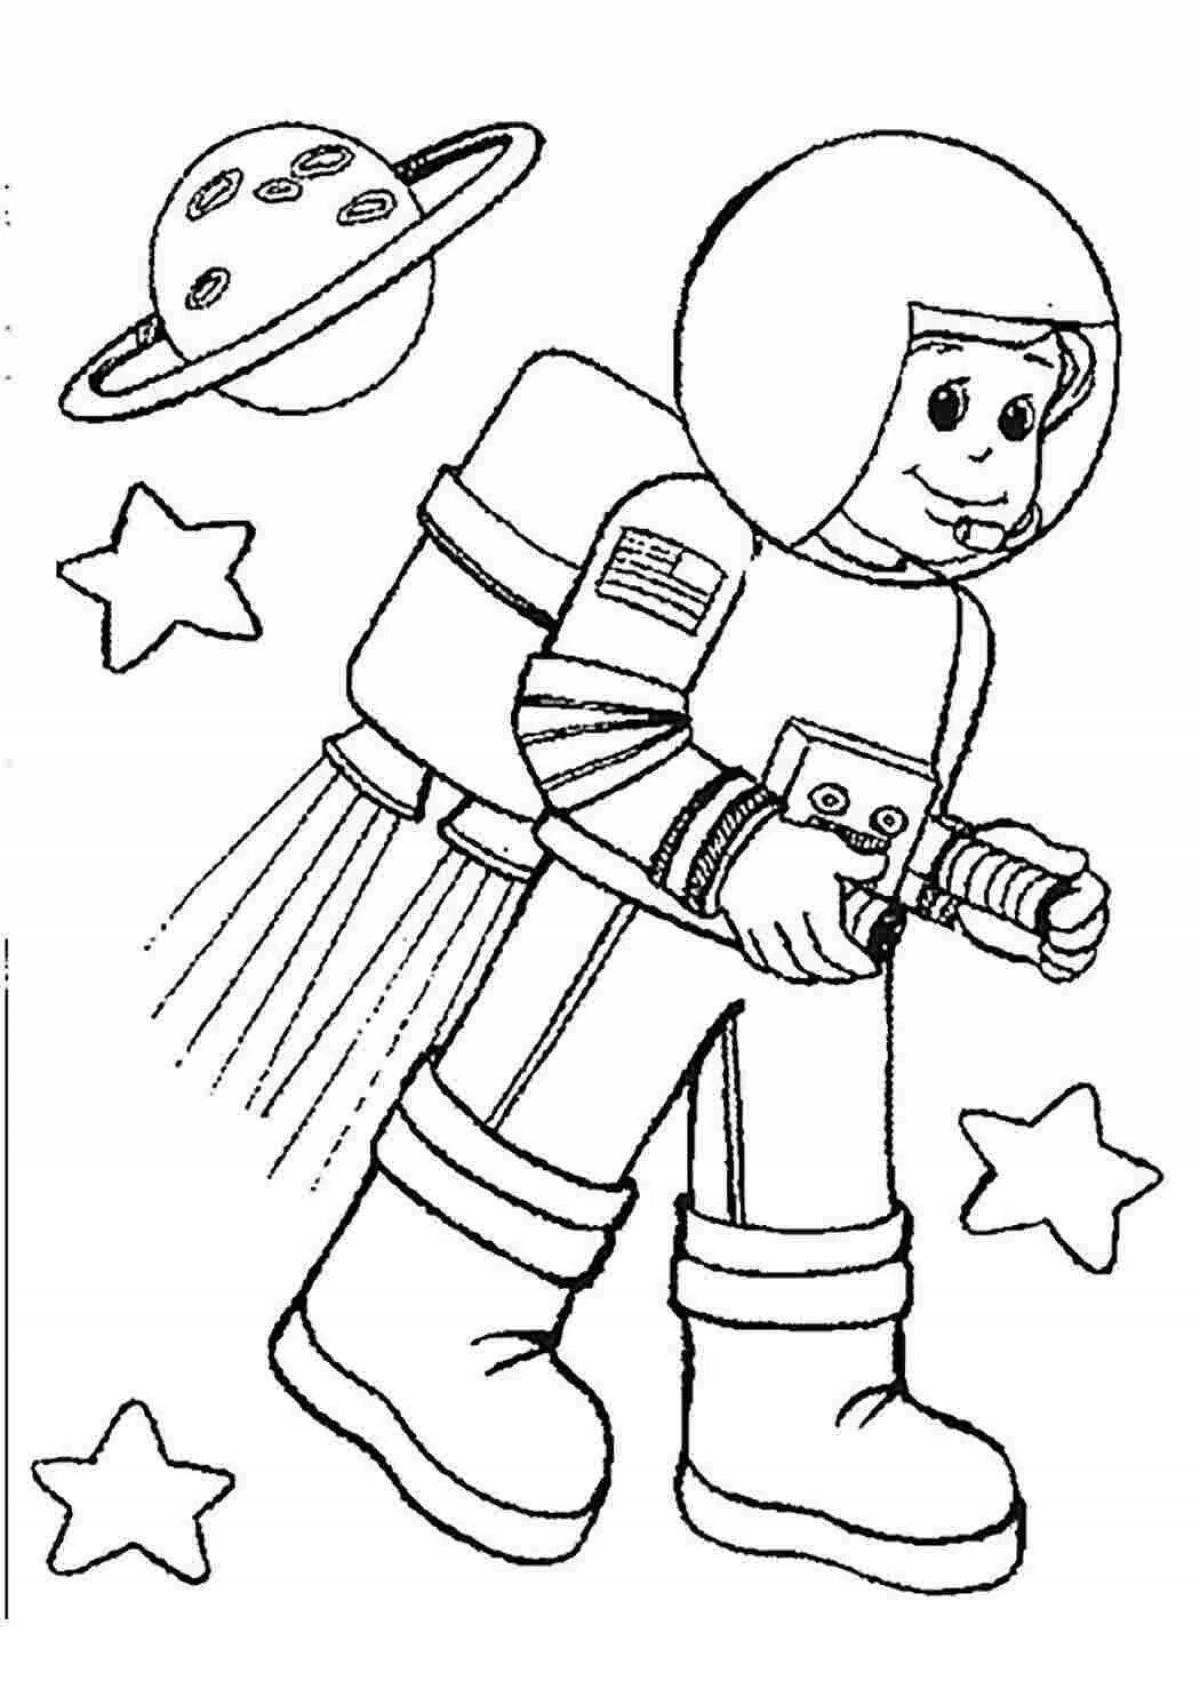 День космонавтики картинки раскраски. Космонавт раскраска для детей. Космос раскраска для детей. Раскраска. Профессии. Раскраски ко Дню космонавтики.